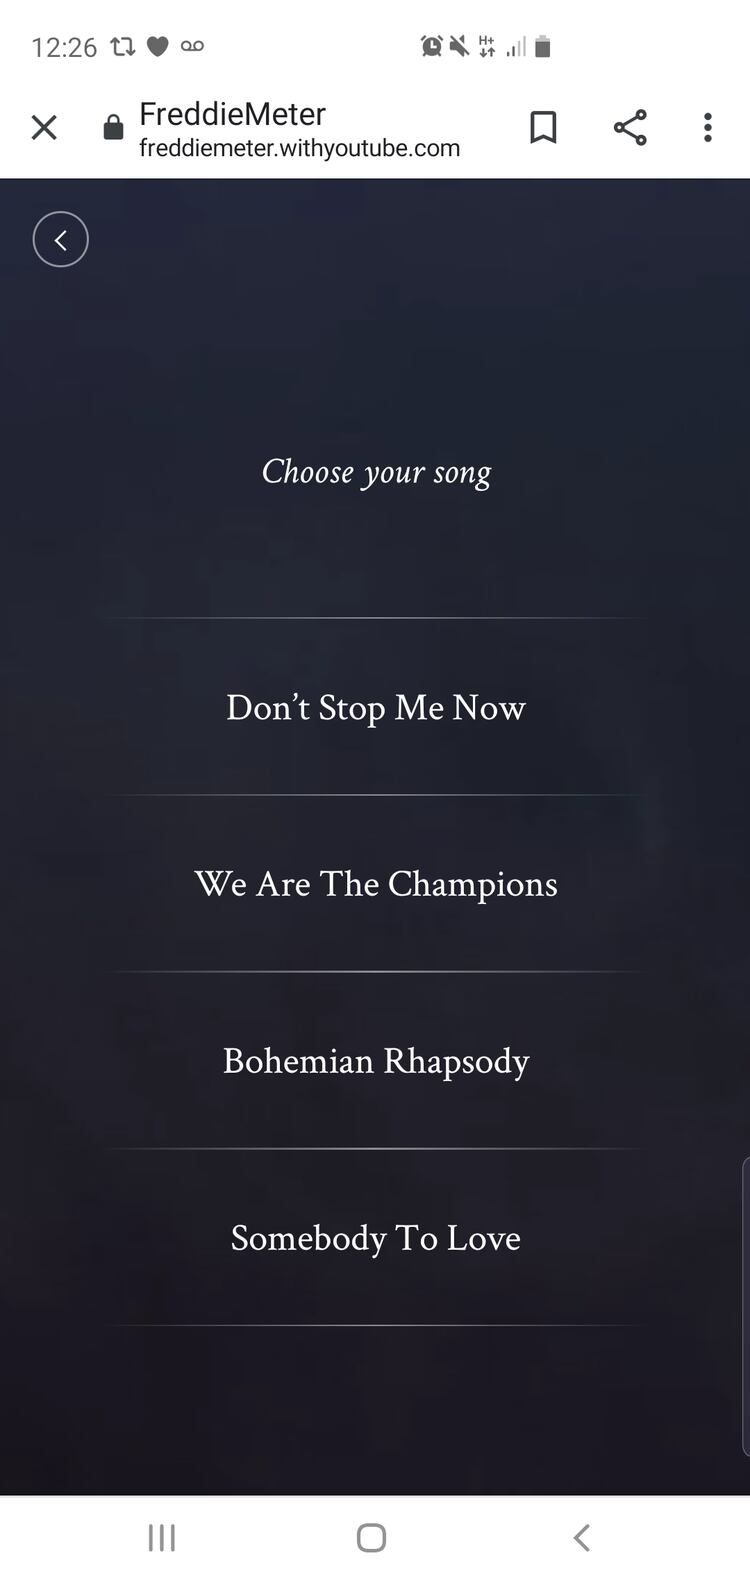 FreddieMeter te permite comparar y contrastar tu forma de cantar con la de Freddie Mercury.